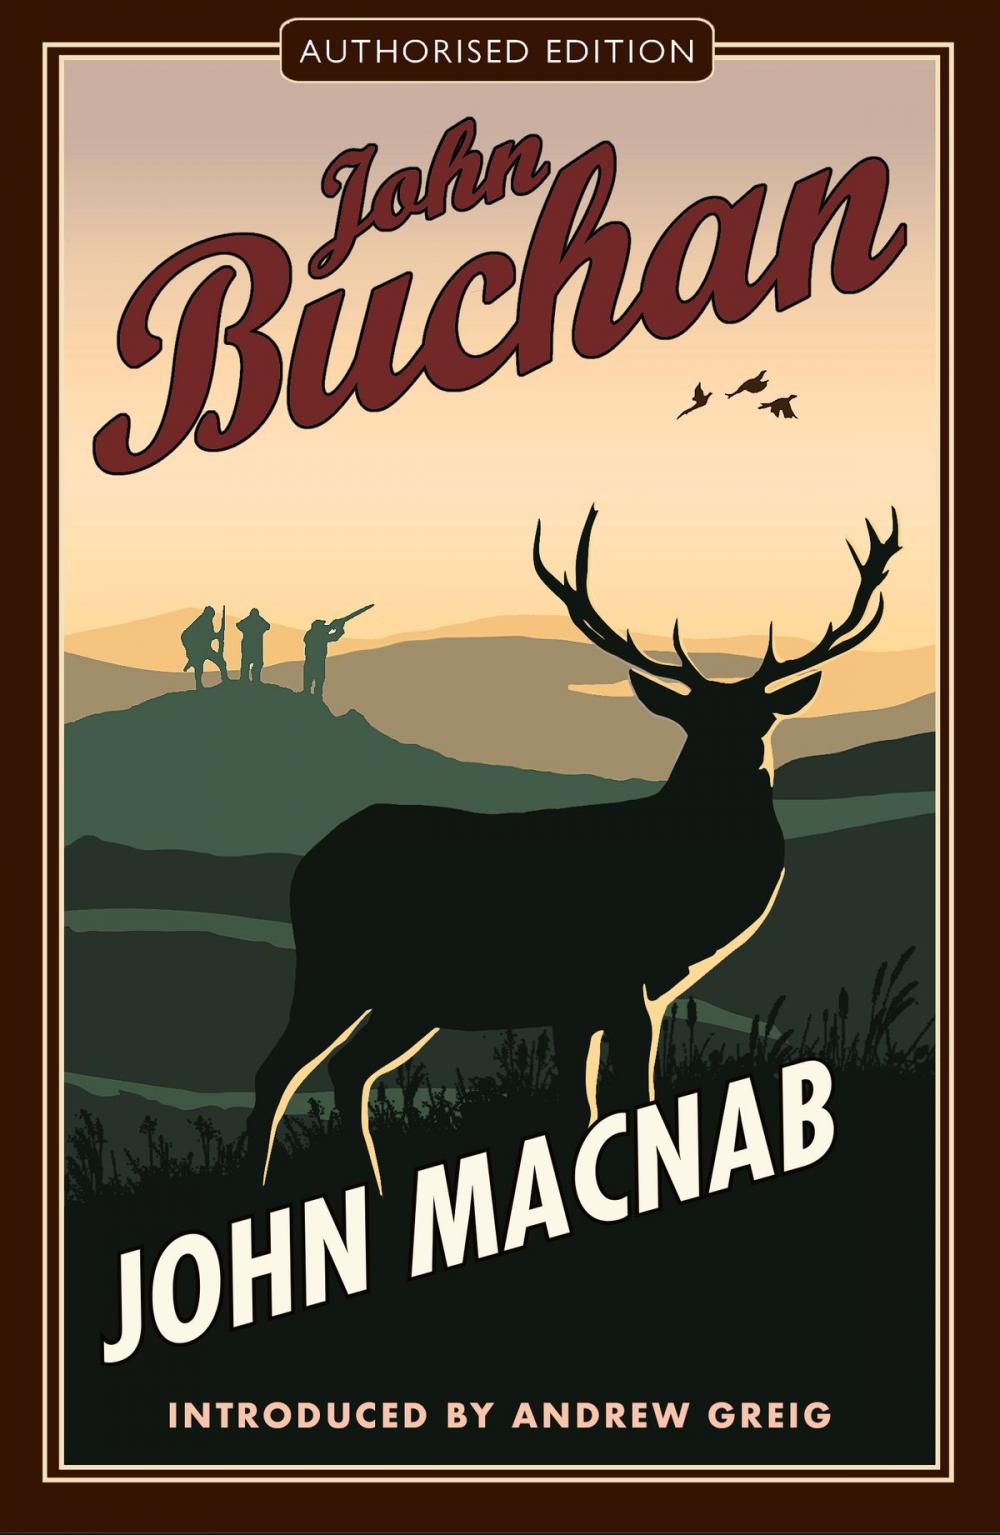 Big bigCover of John Macnab